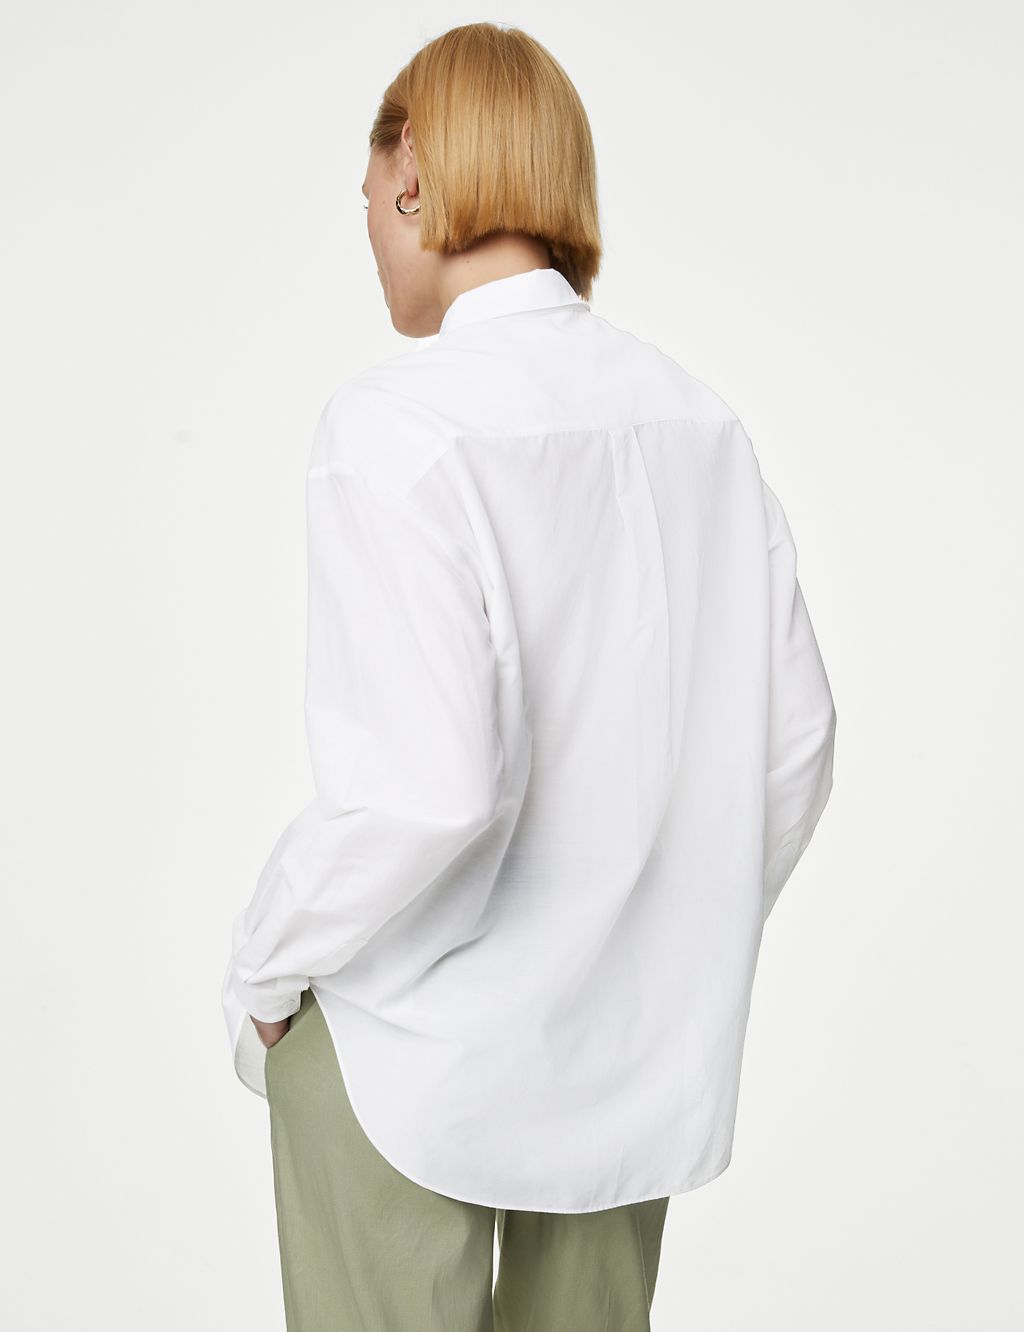 Silk Blend Collared Long Sleeve Shirt 5 of 6